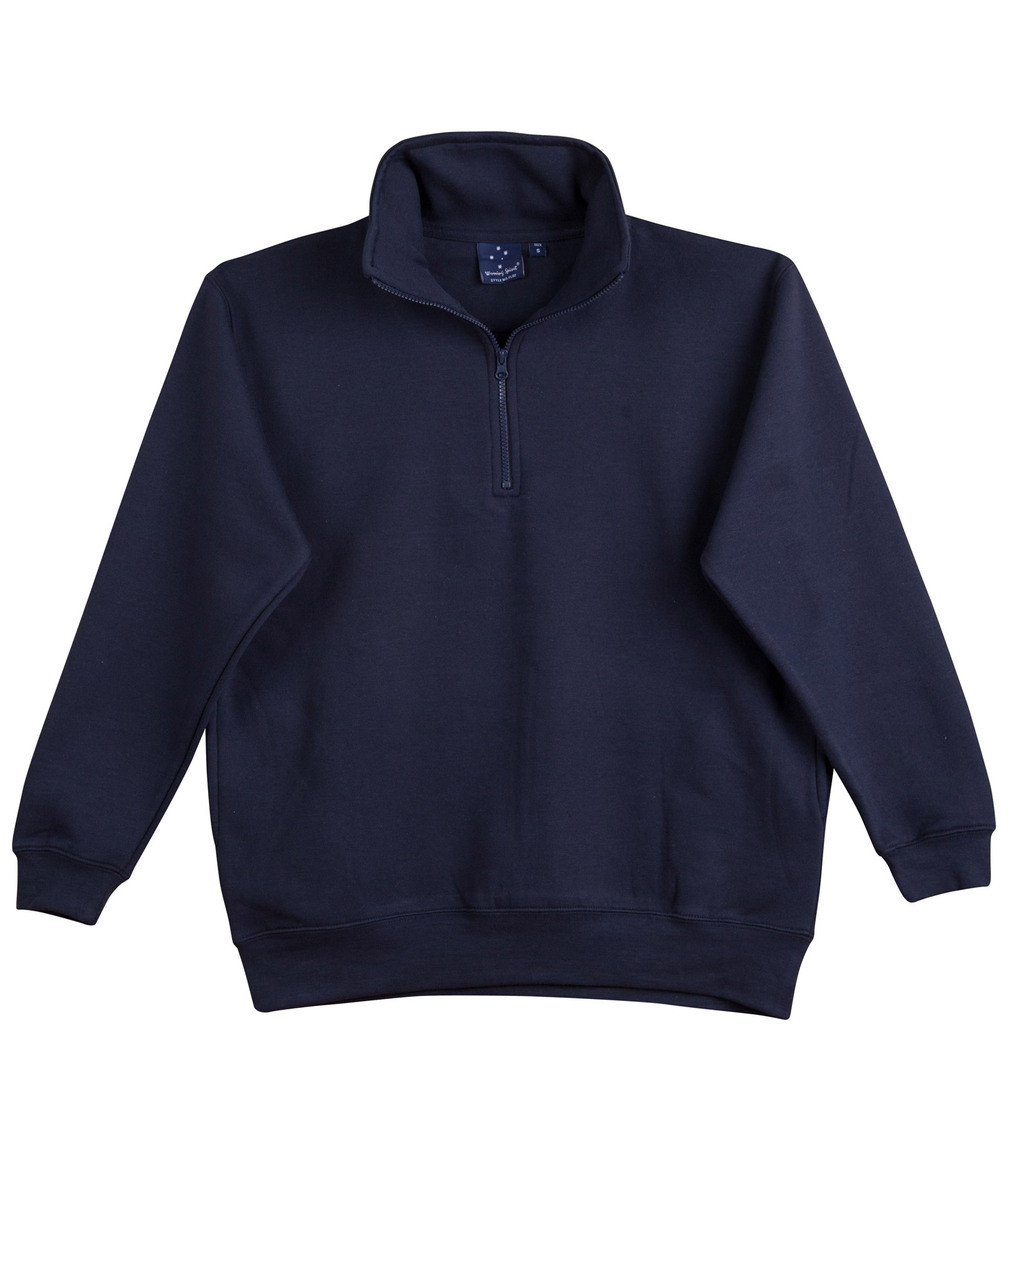 SWEATERS | half zip fleecy | buy online bulk wholesale | fleece sweater